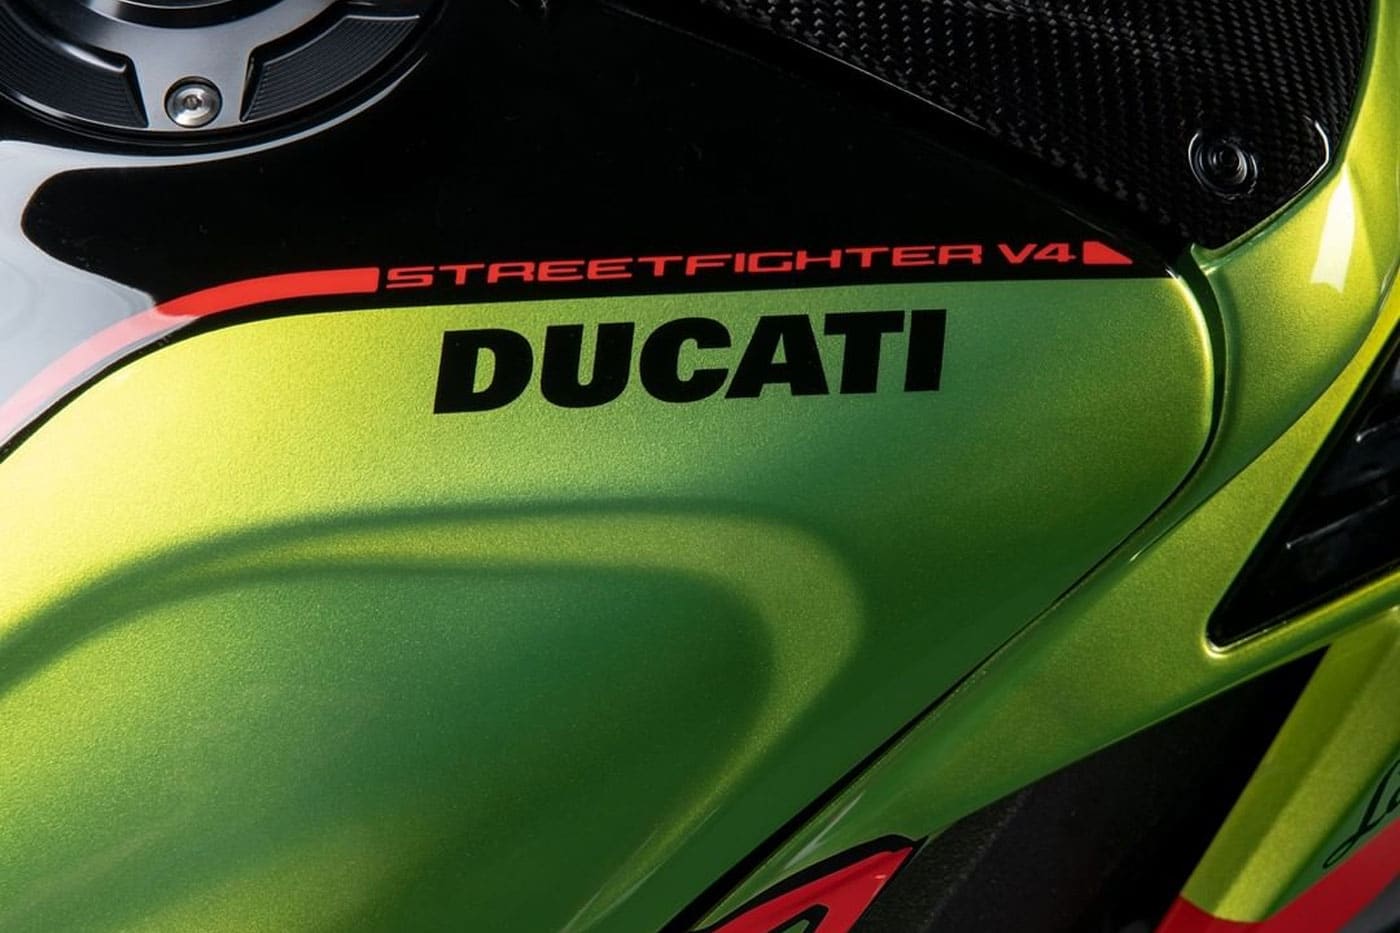 Ducati Streetfighter V4 Lamborghini motor superbike